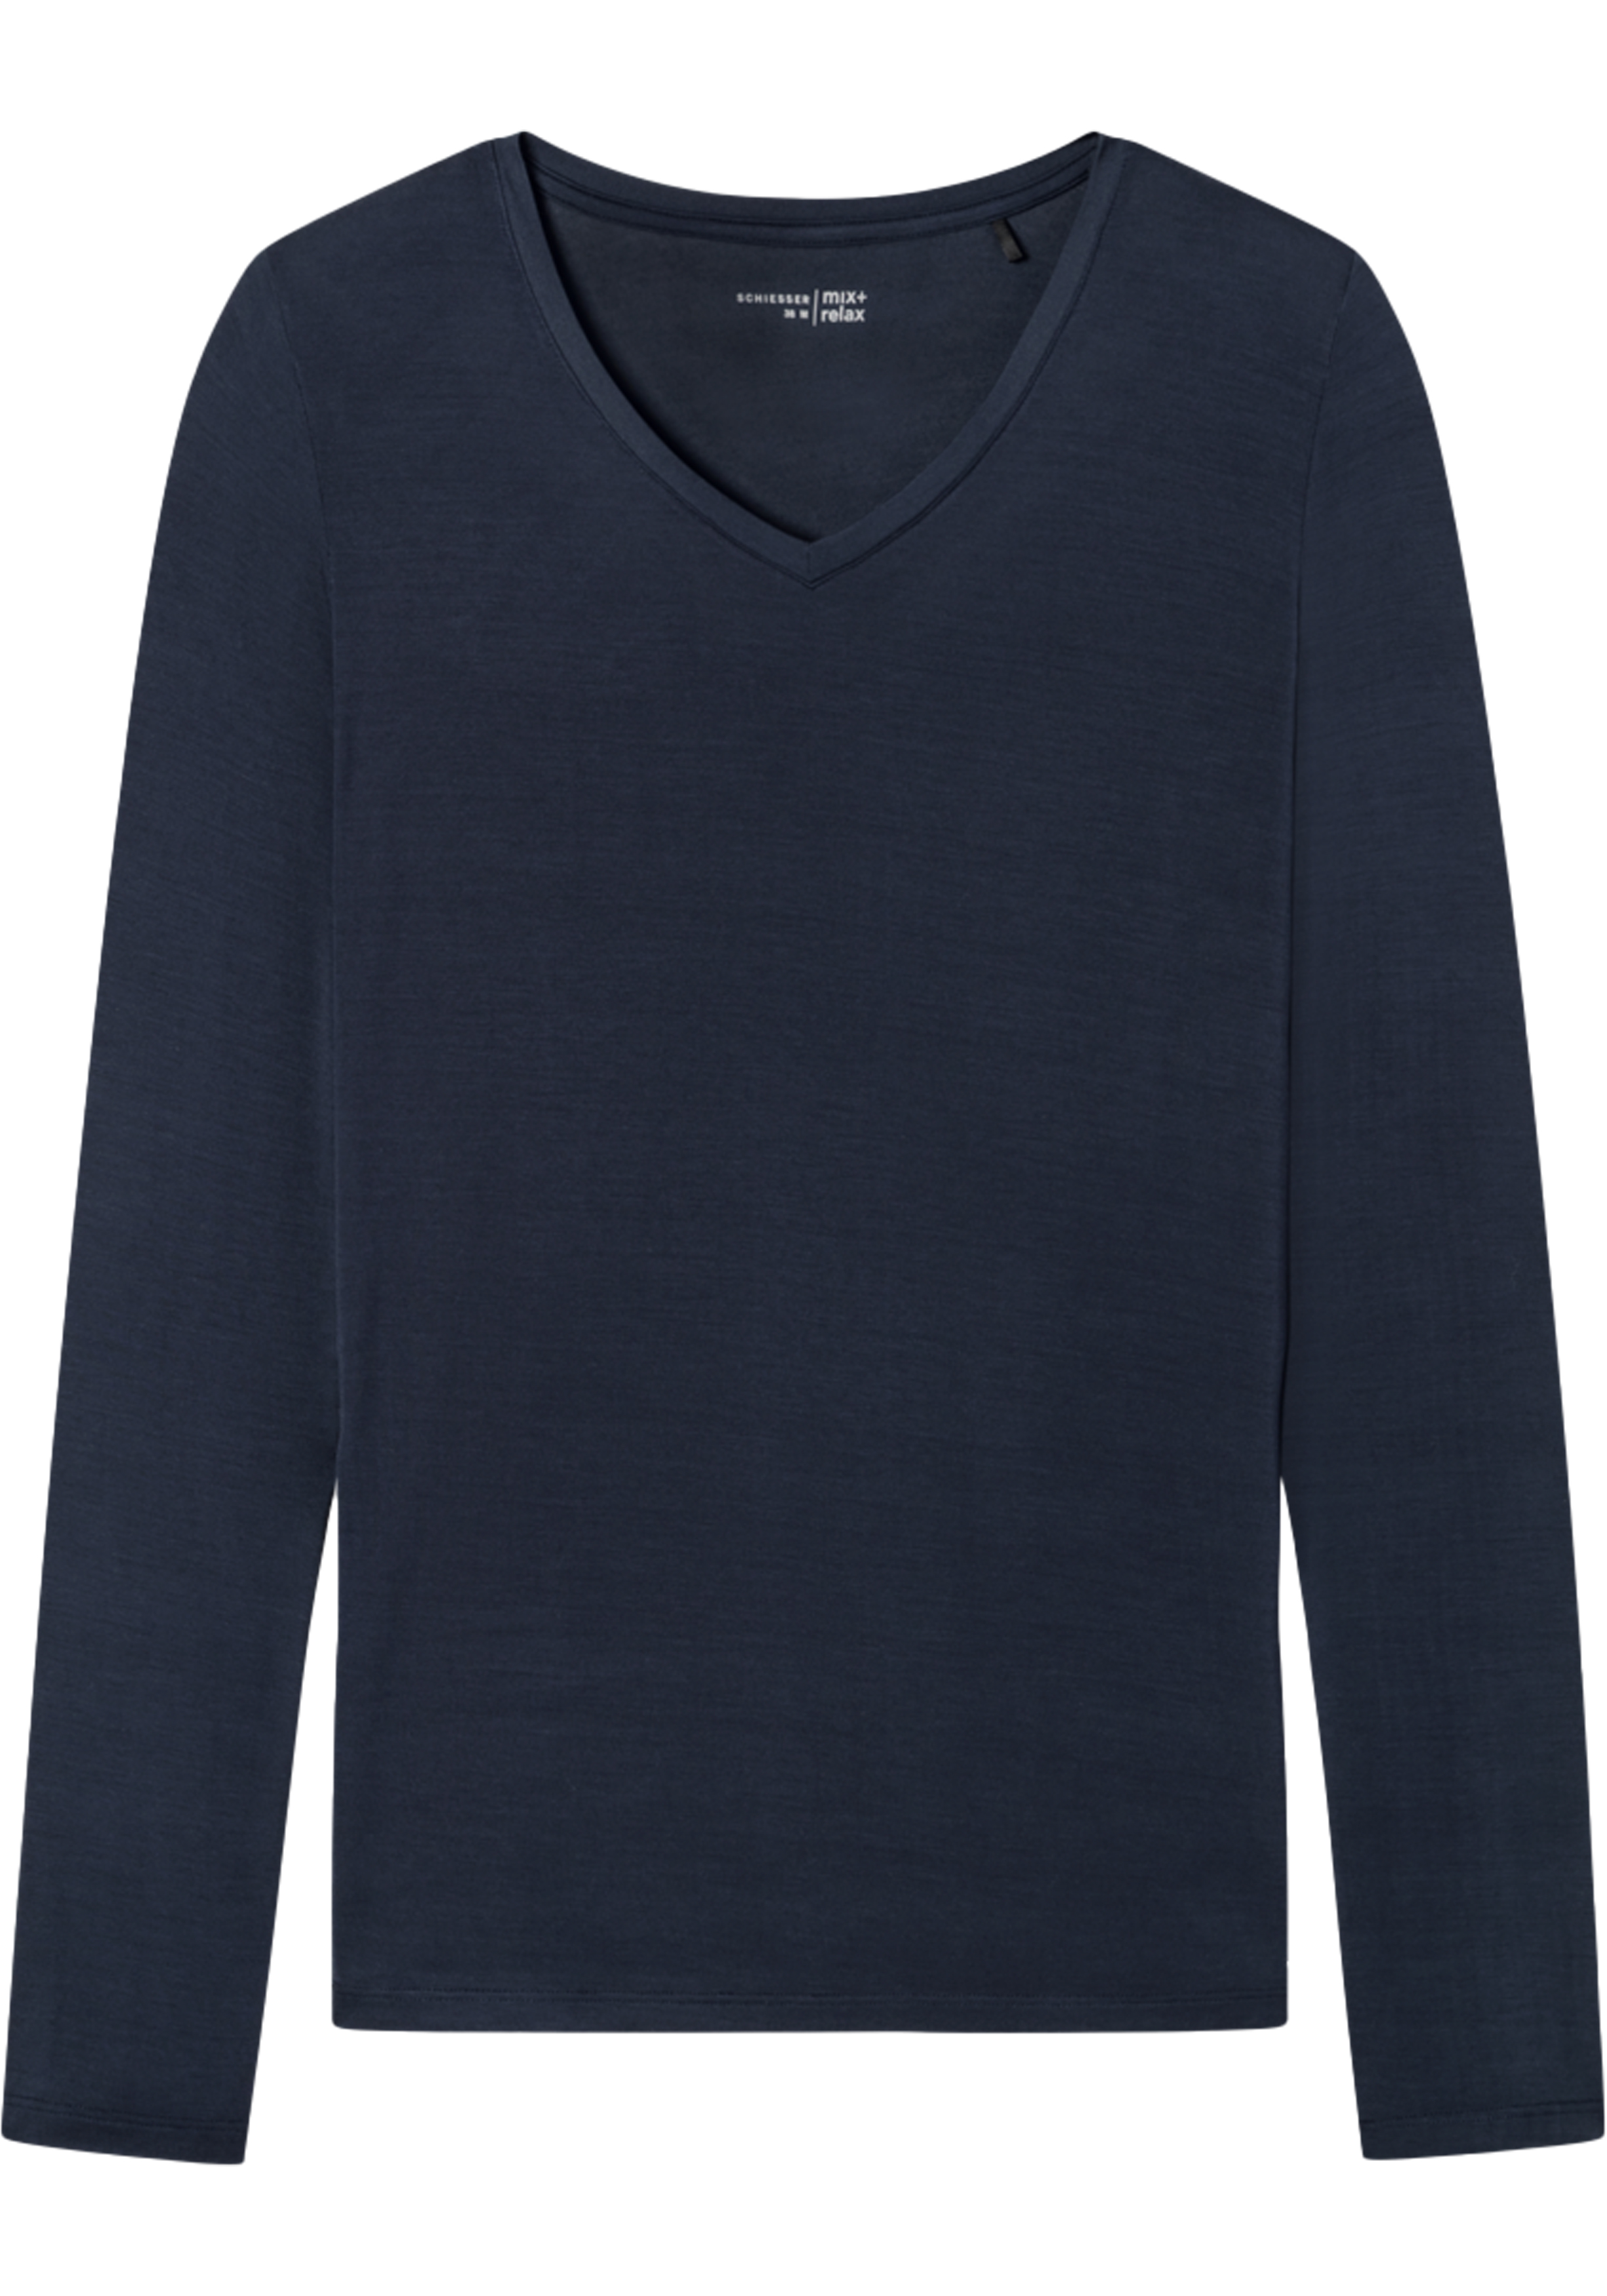 SCHIESSER Mix+Relax T-shirt, dames shirt lange mouwen modal v-hals blauw